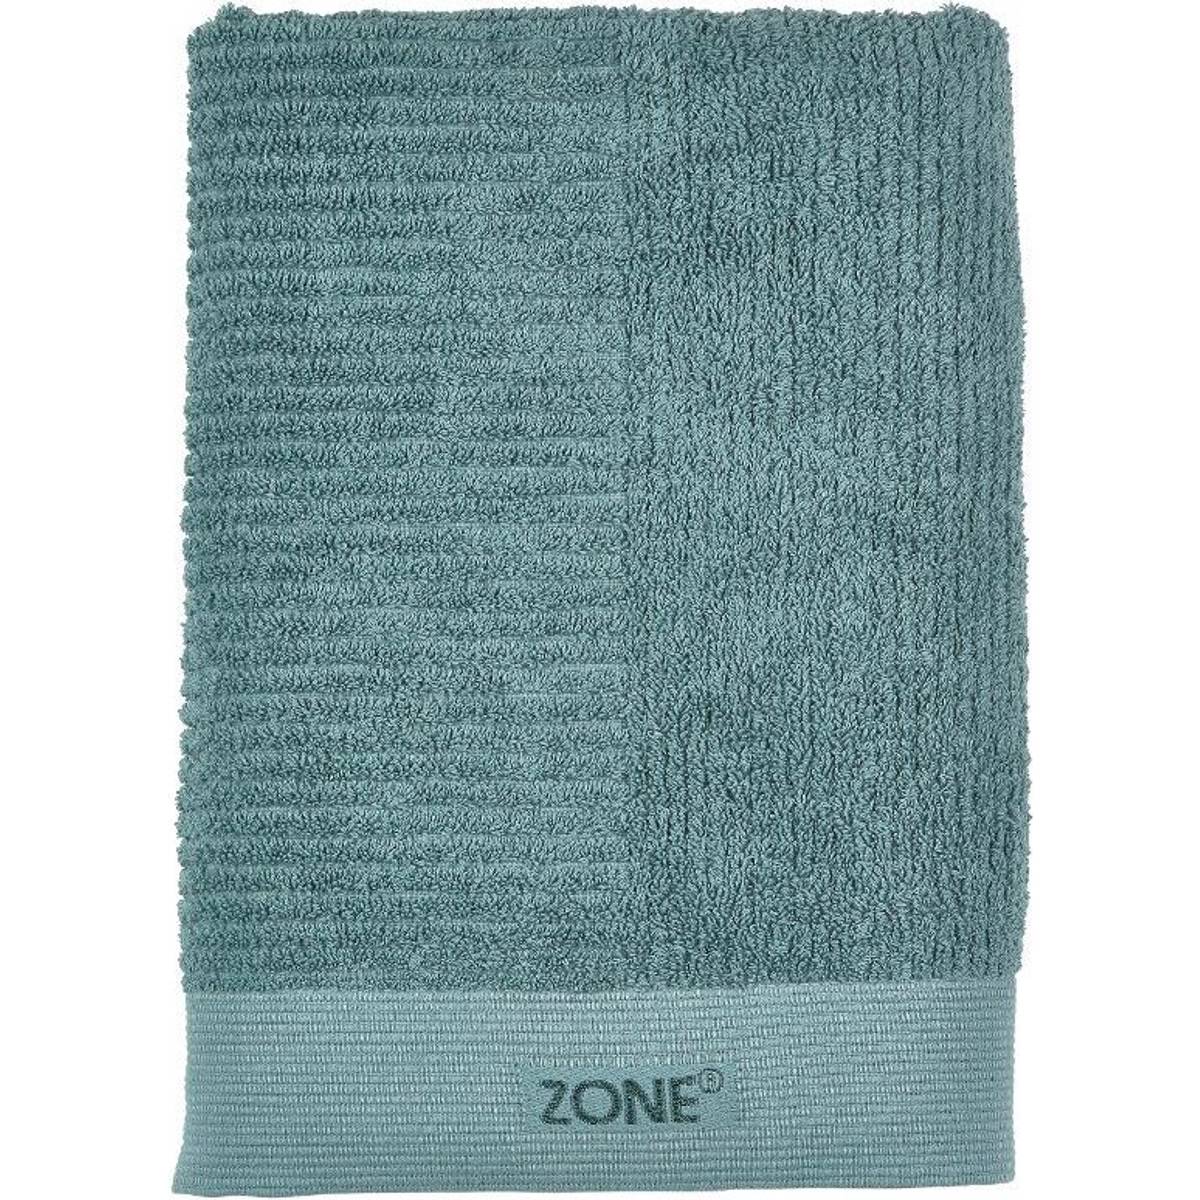 Zone håndklæder • Find den billigste pris hos PriceRunner nu »